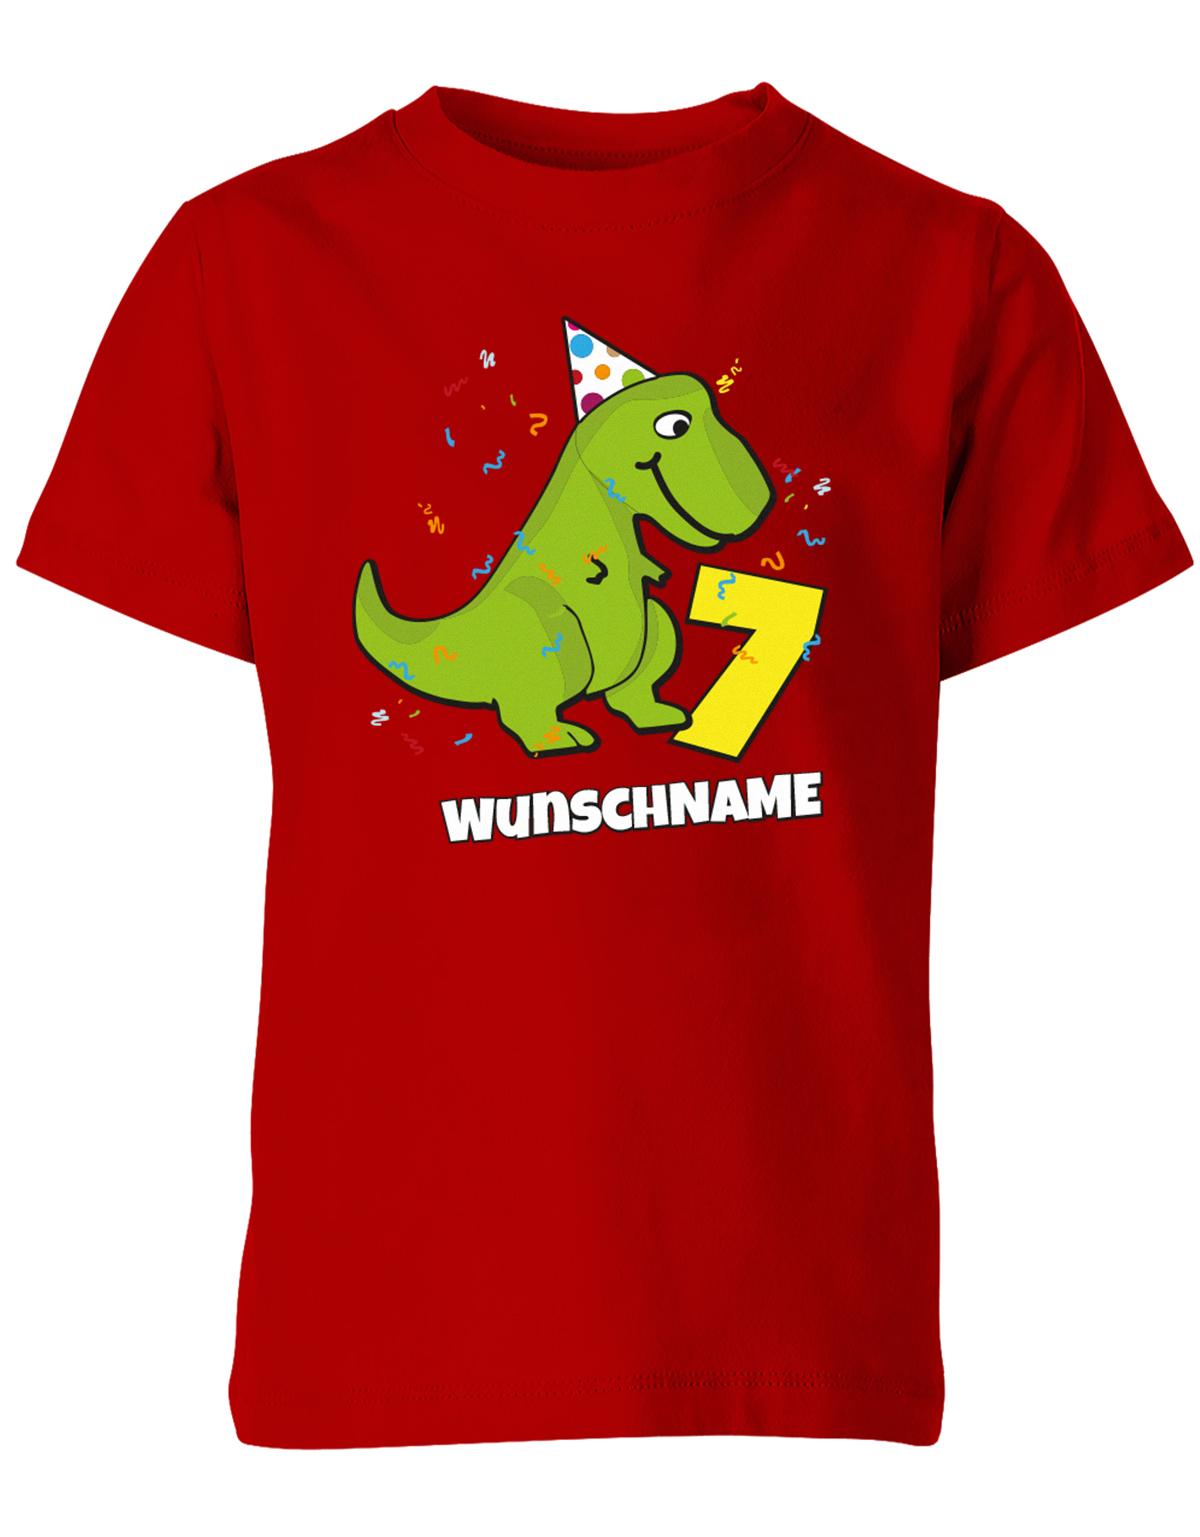 ich-bin-7-Dinosaurier-t-rex-wunschname-geburtstag-kinder-shirt-rot